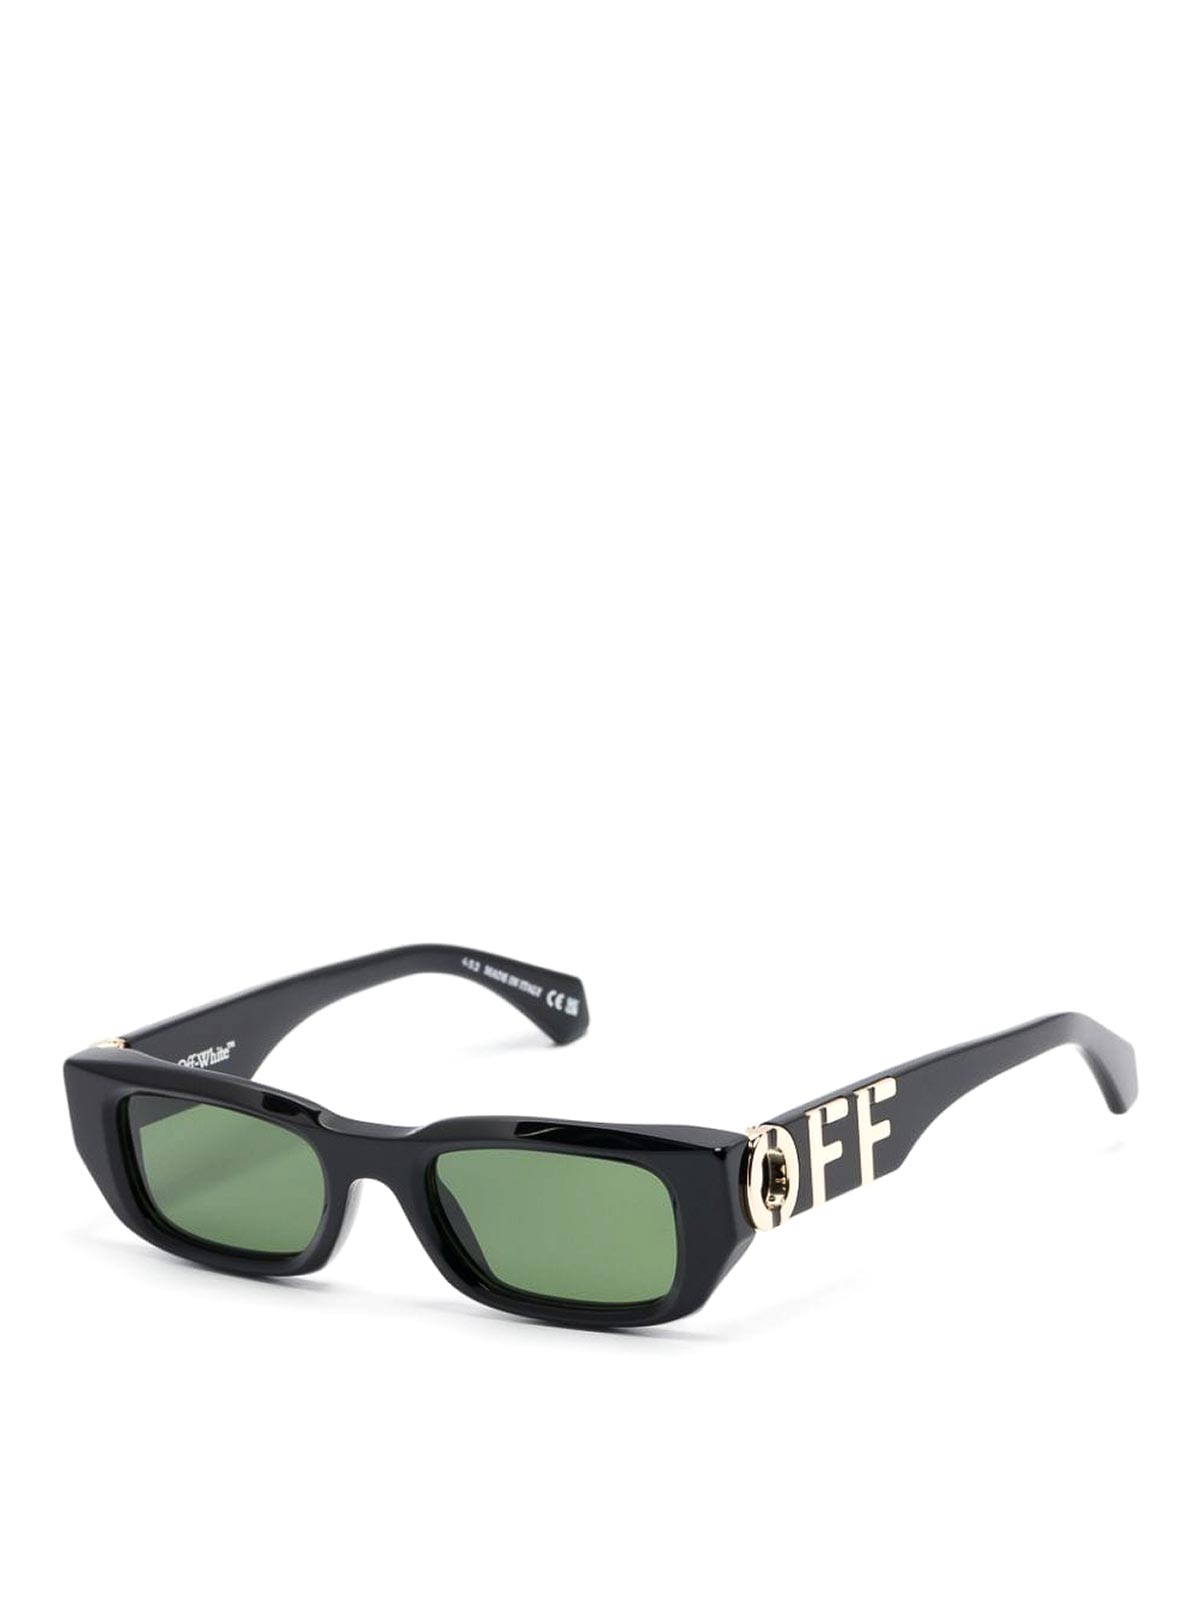 Shop Off-white Gafas De Sol - Fillmore In Black